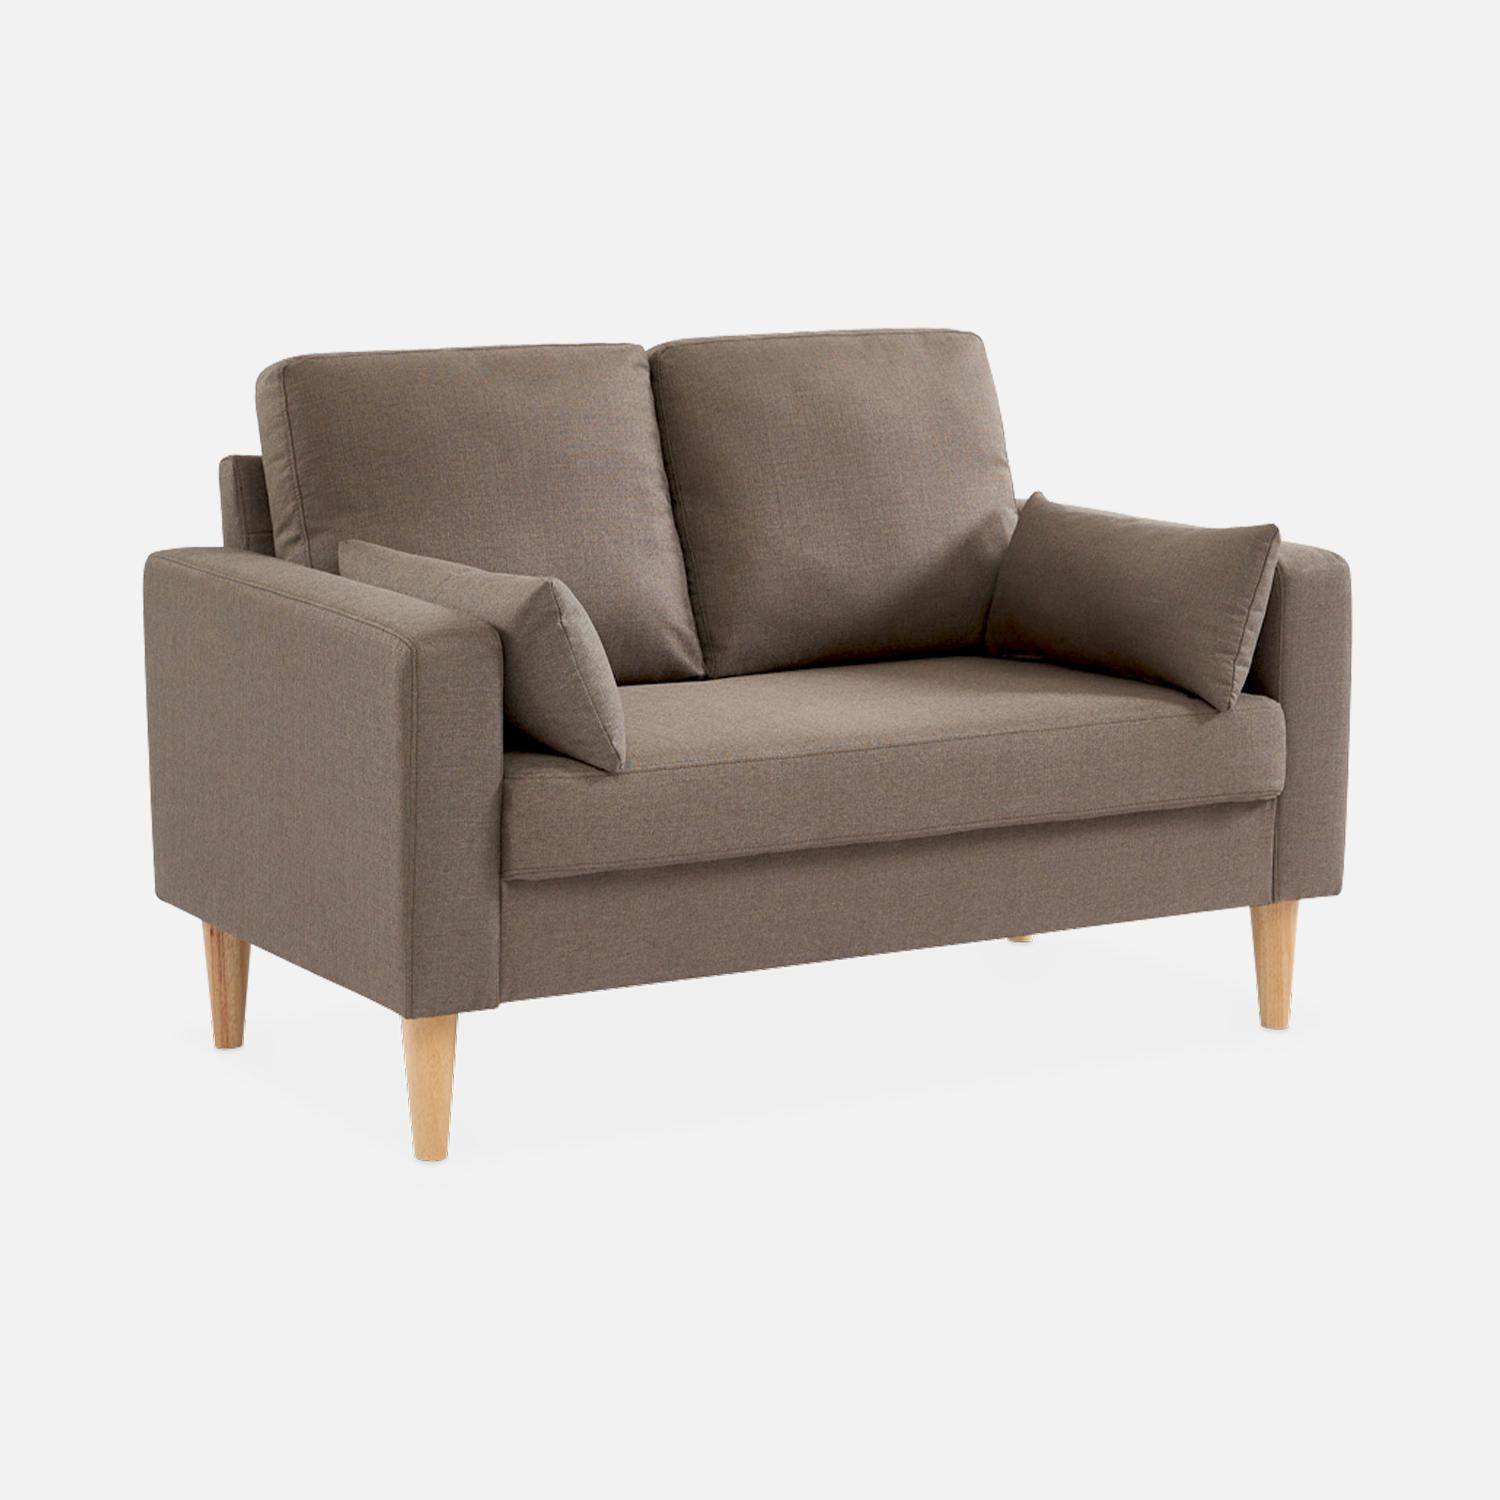 Canapé en tissu marron - Bjorn - Canapé 2 places fixe droit pieds bois, style scandinave   Photo2